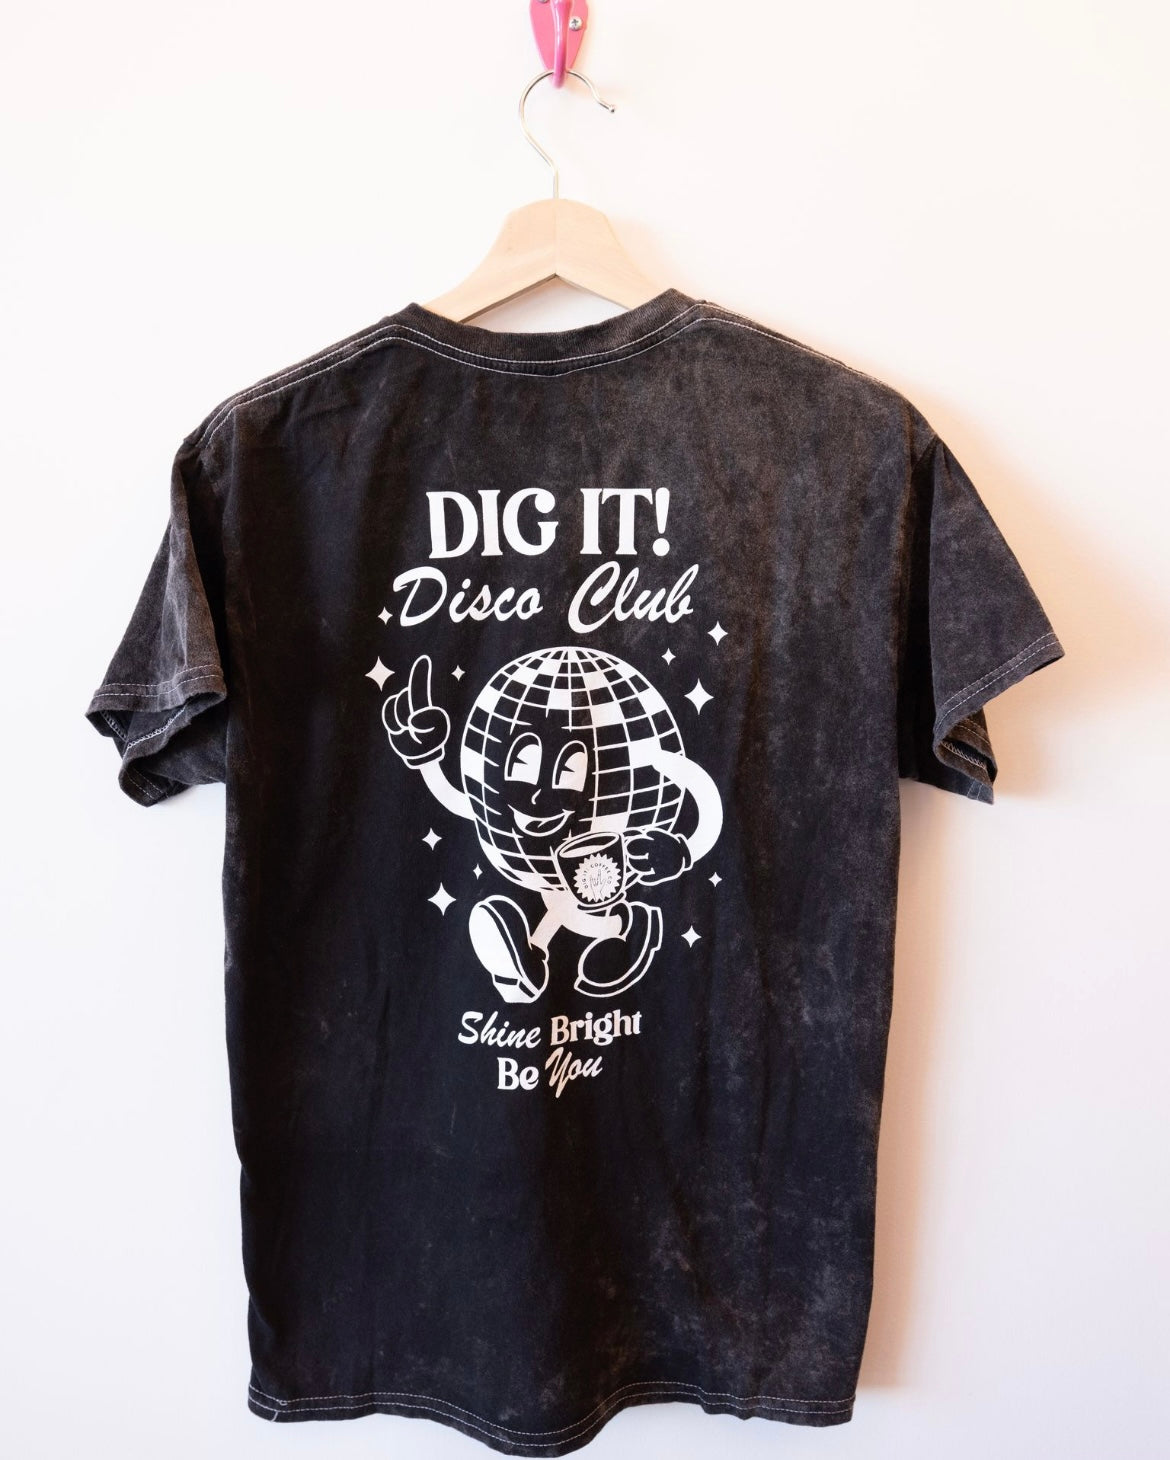 Dig It! Disco Club Mineral Wash Tshirt